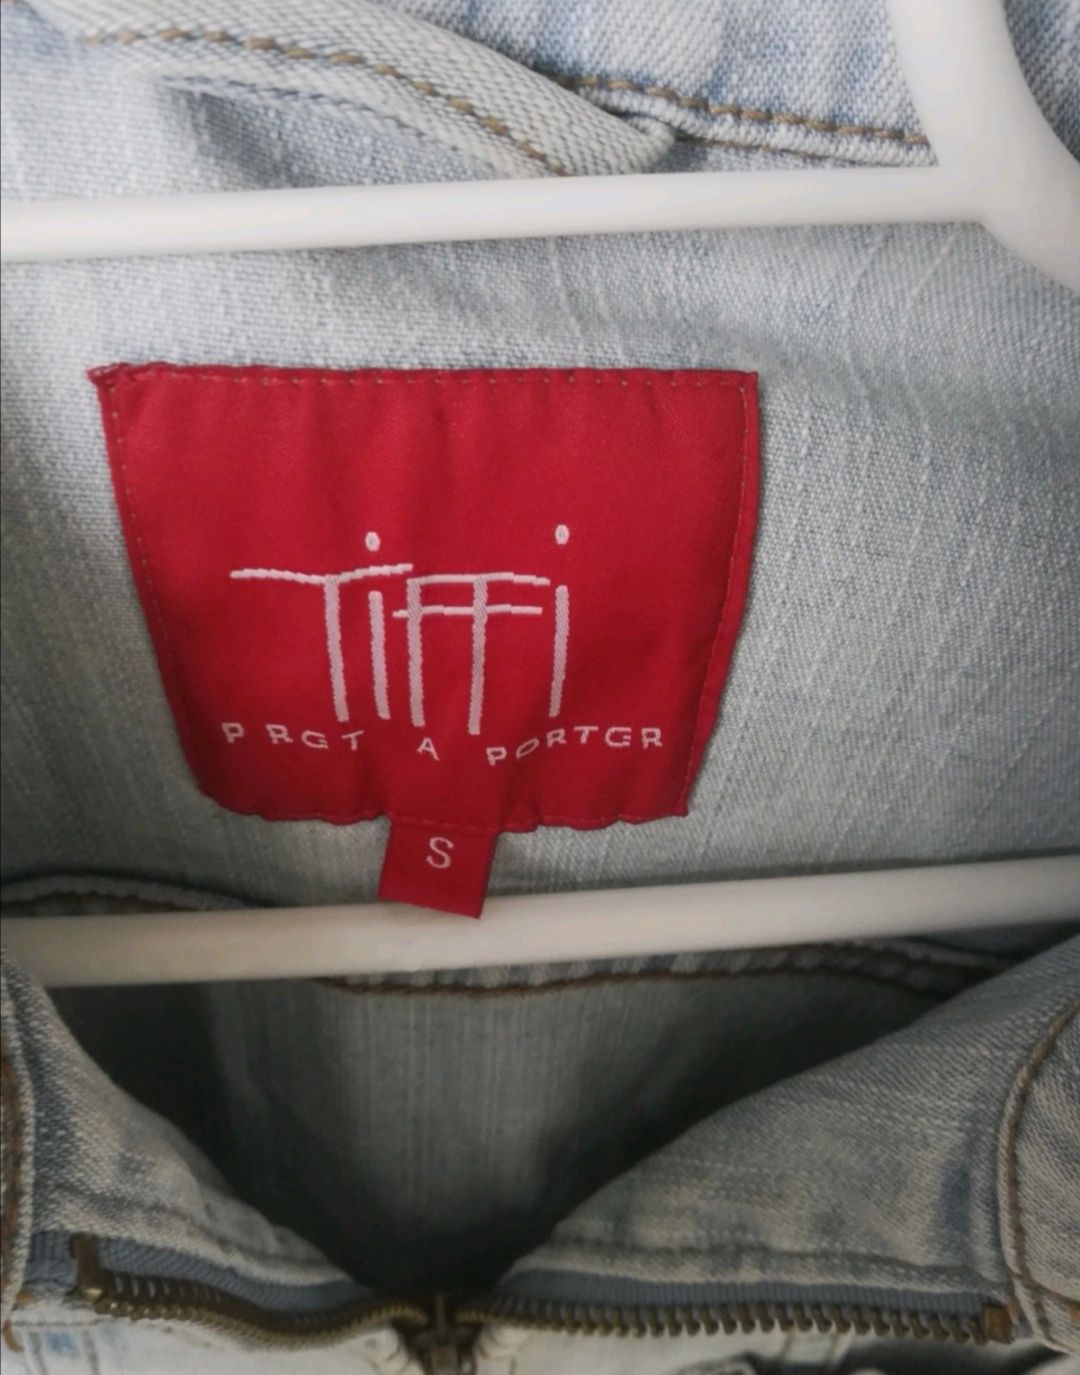 Kurtka jeans firmy Tiffi S katana jasna crop krótka